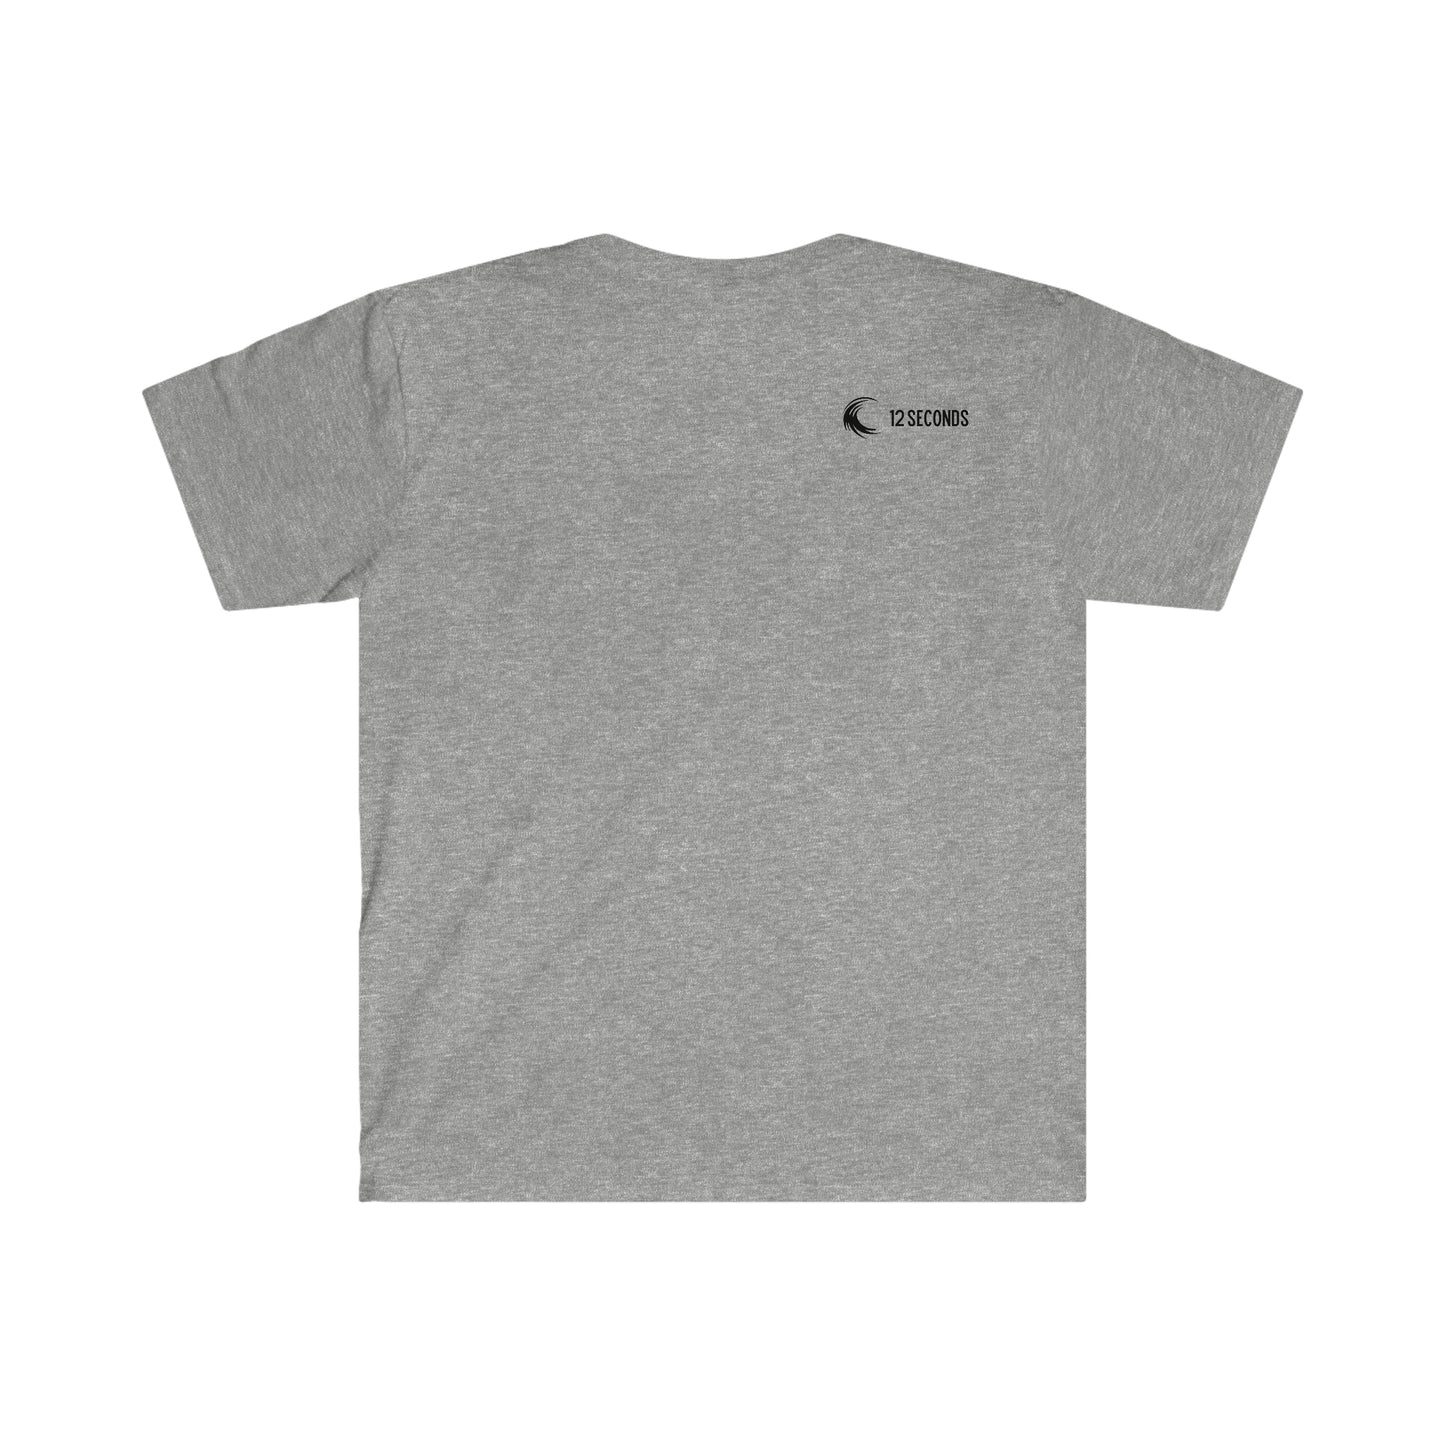 Unisex Softstyle T-Shirt - UKELELE - 12 SECONDS APPAREL